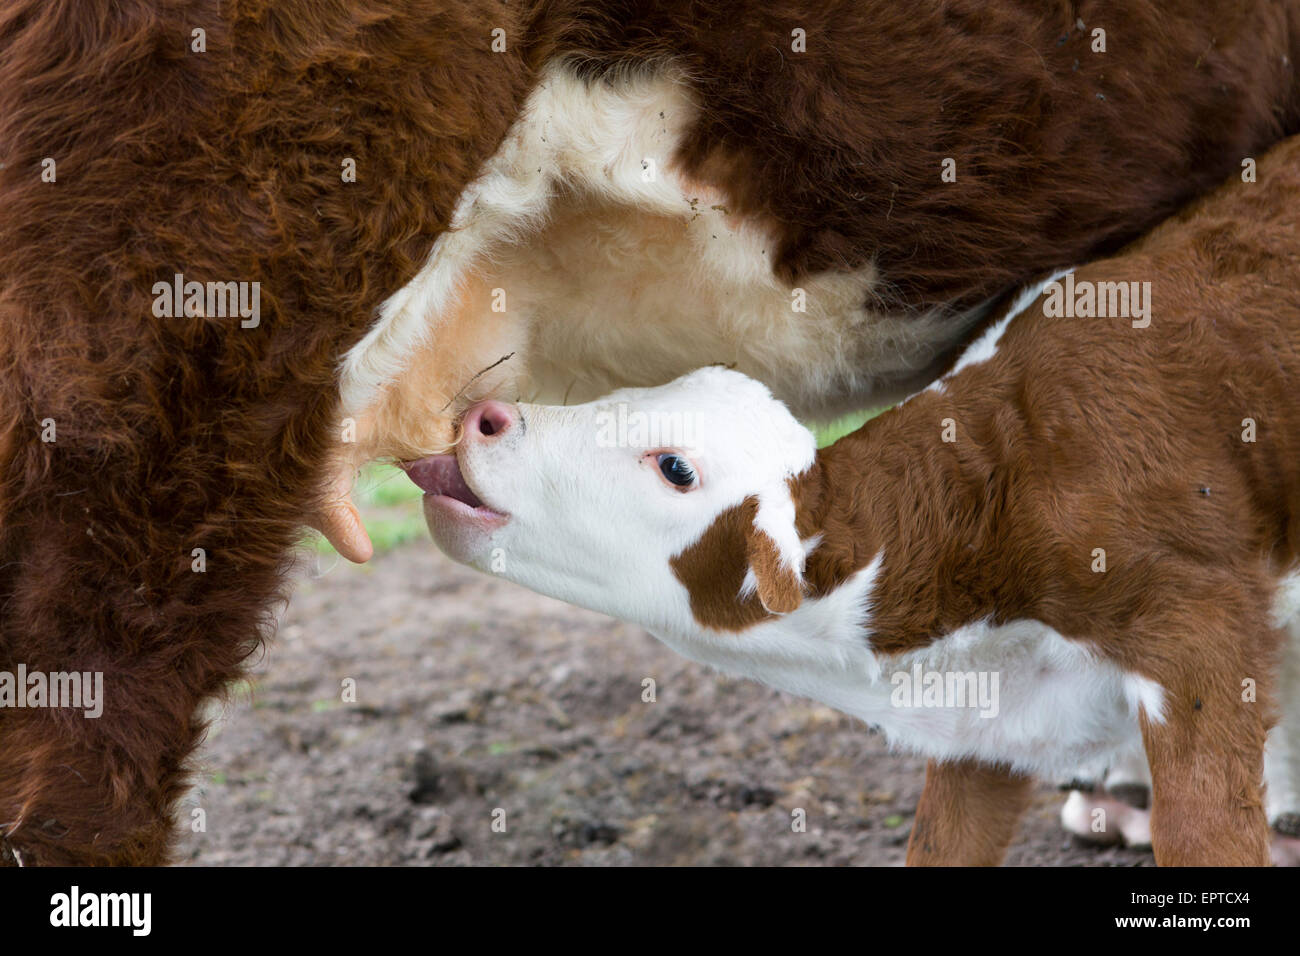 Veau Hereford boire du lait à la cuillère de sa mère vache dans les Pays-Bas, à proximité shot Banque D'Images